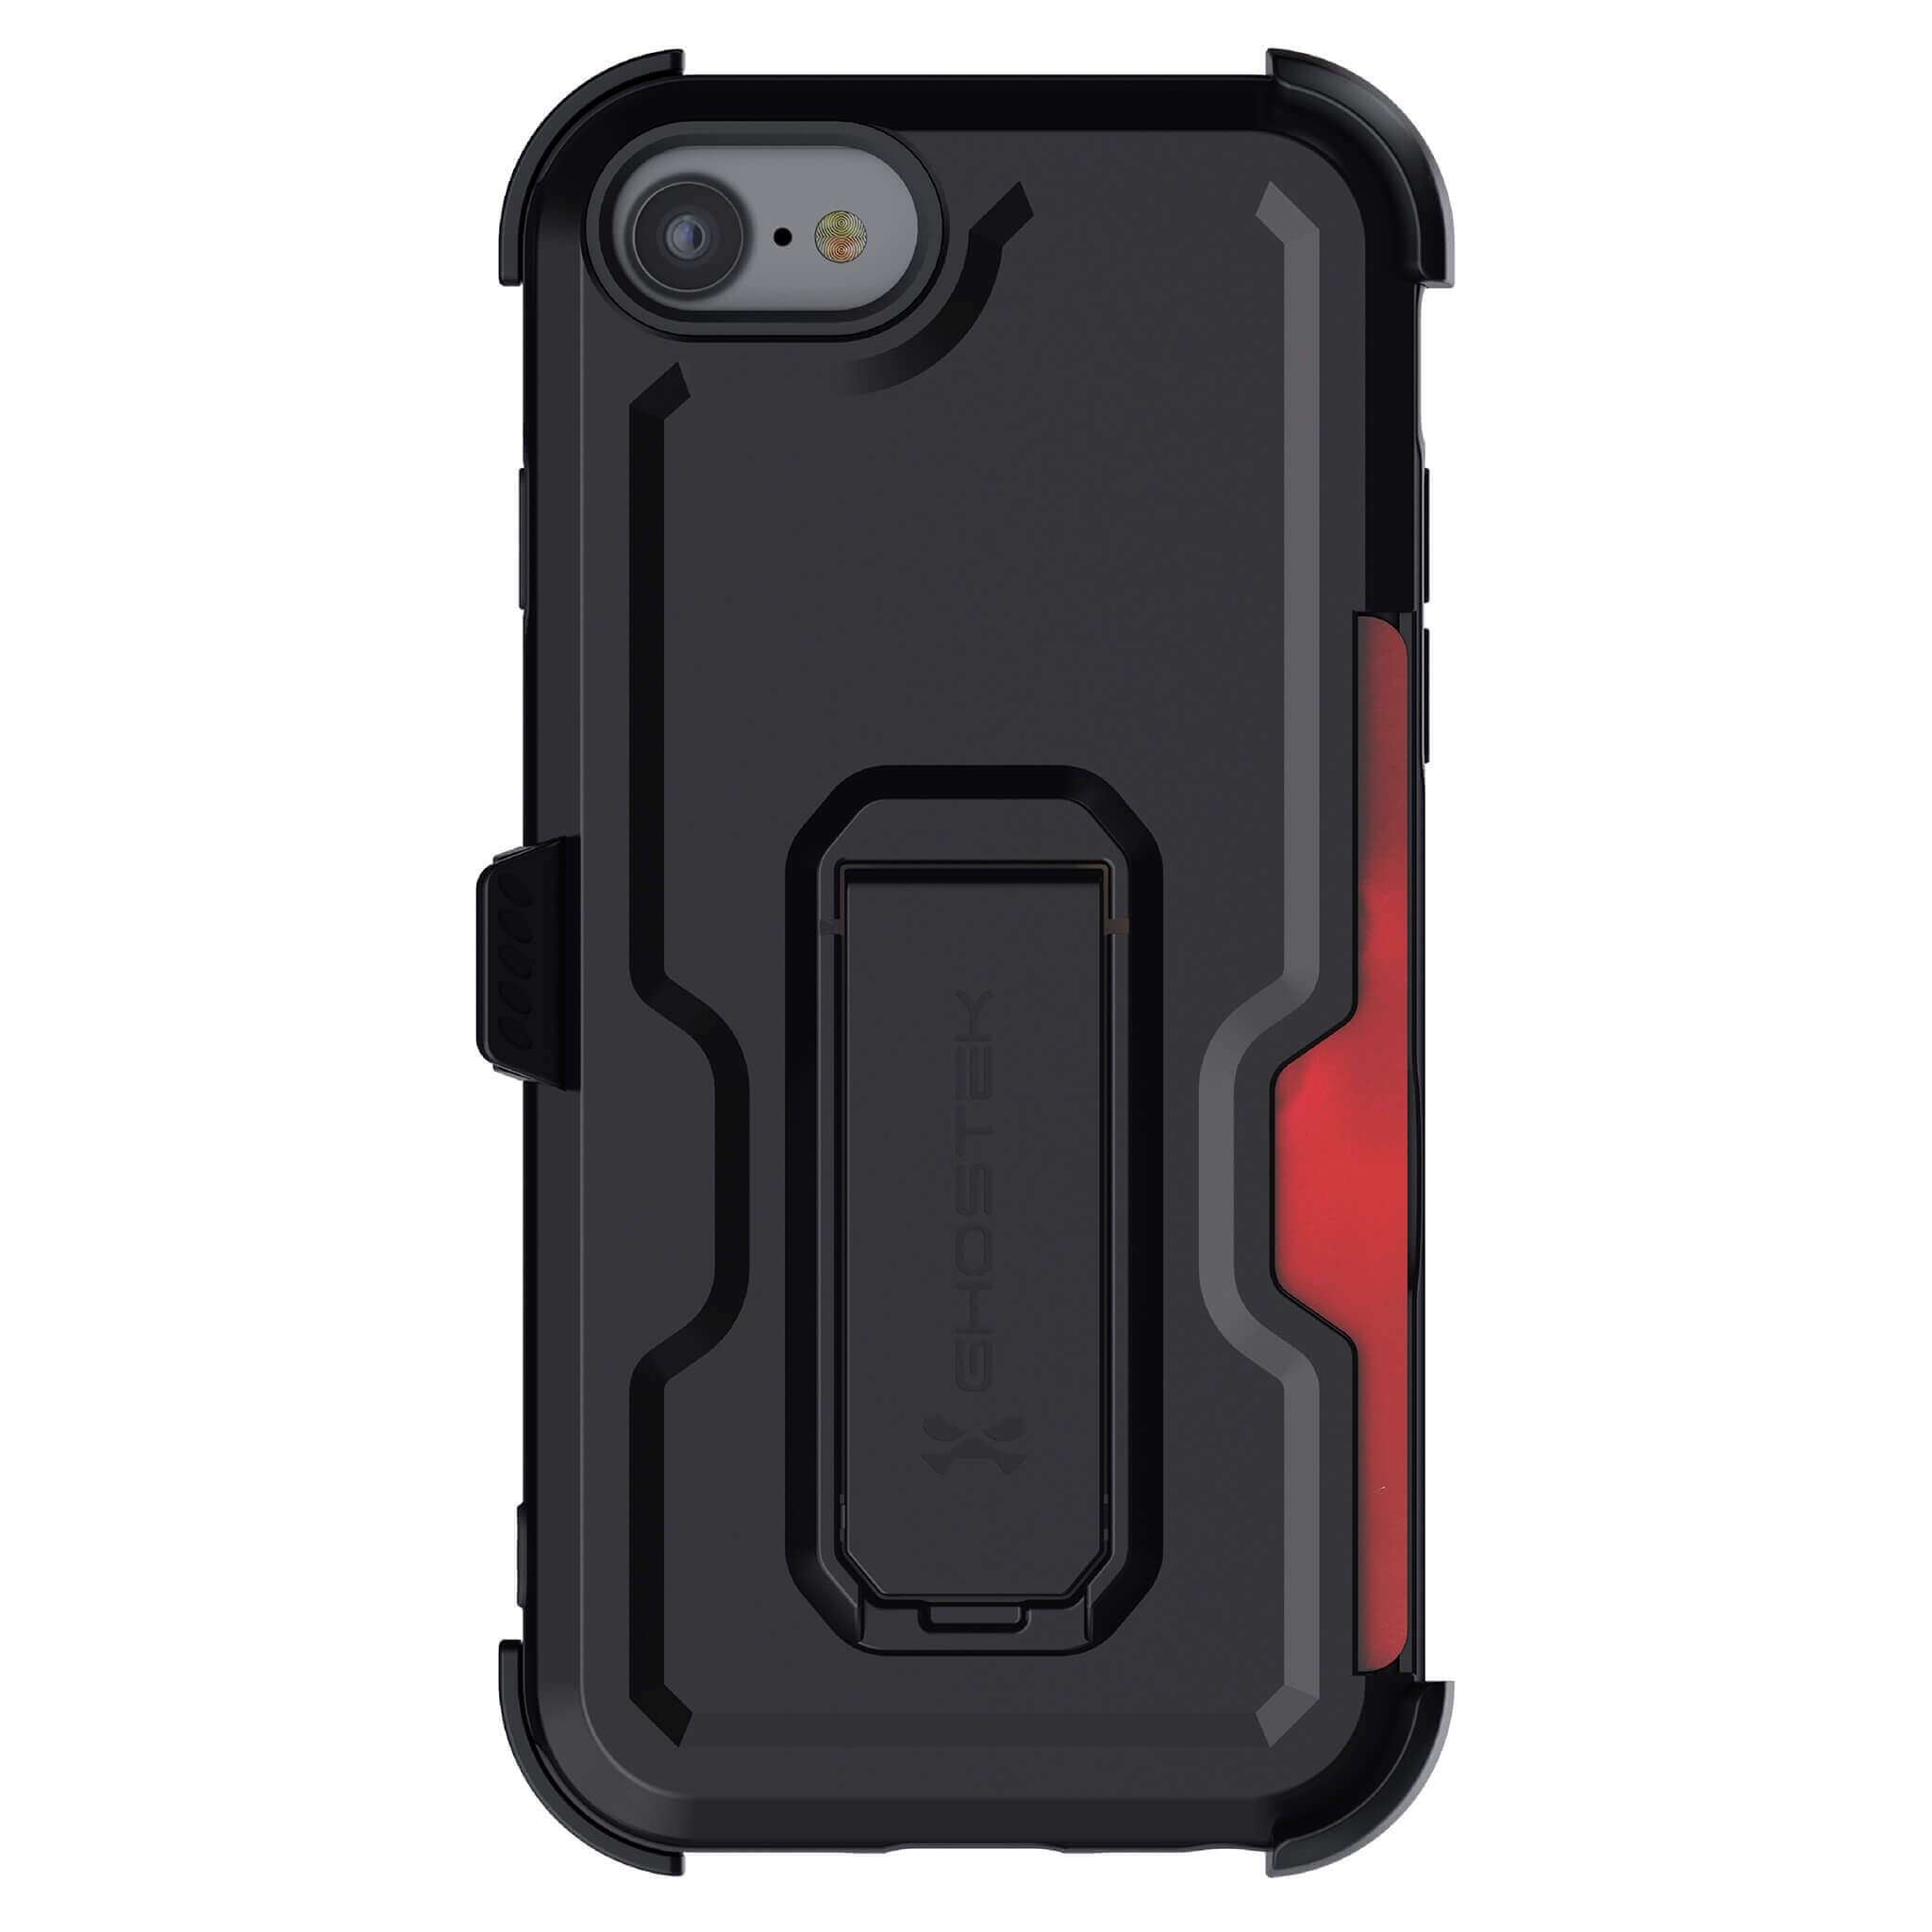 Iron Armor Series iPhone 7 Plus / 8 Plus Cases with Belt Clip